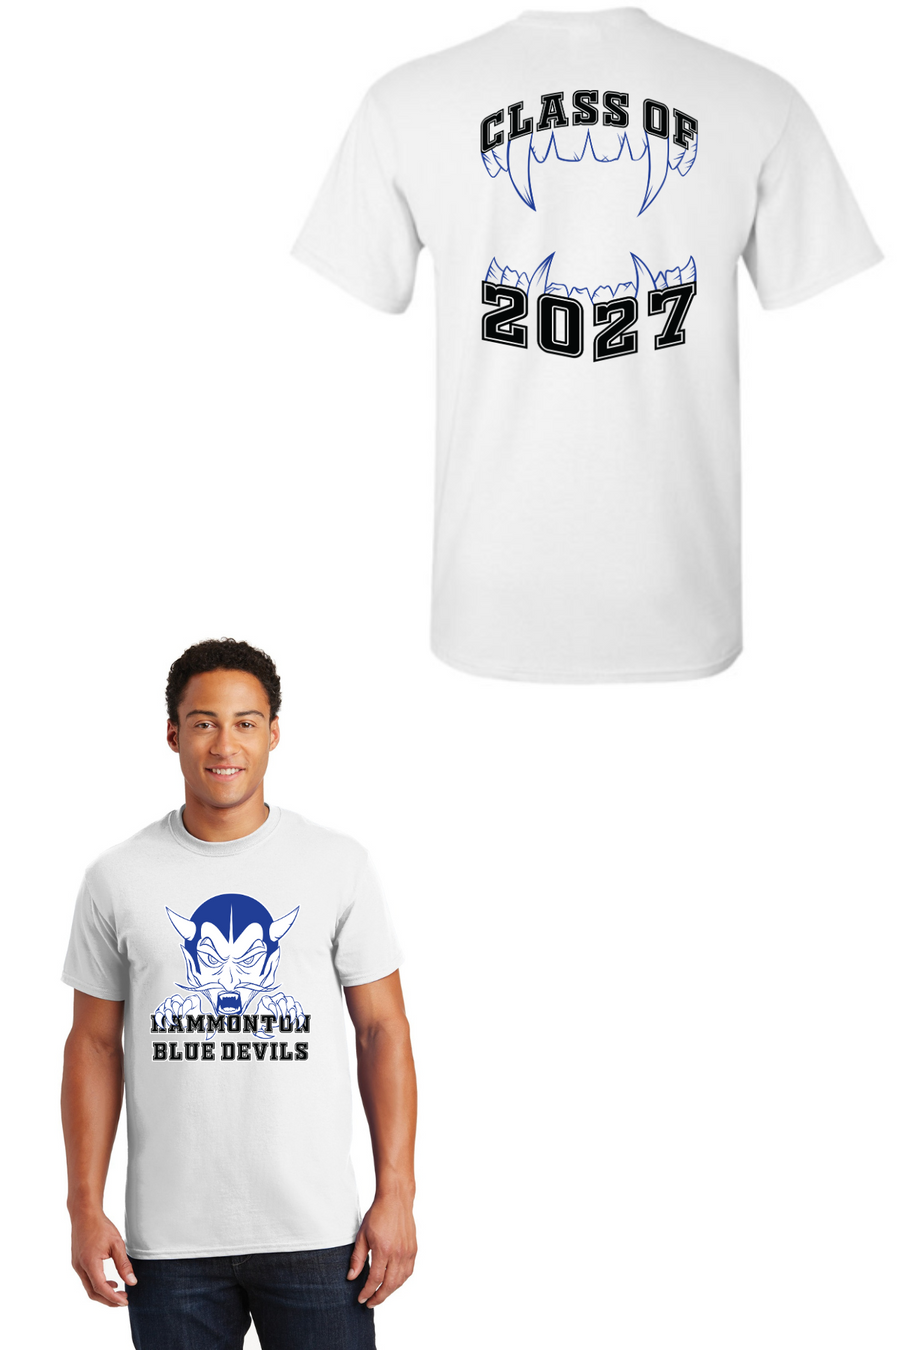 Hammonton HS Homecoming 2023-Freshmen T-Shirt Class of 2027